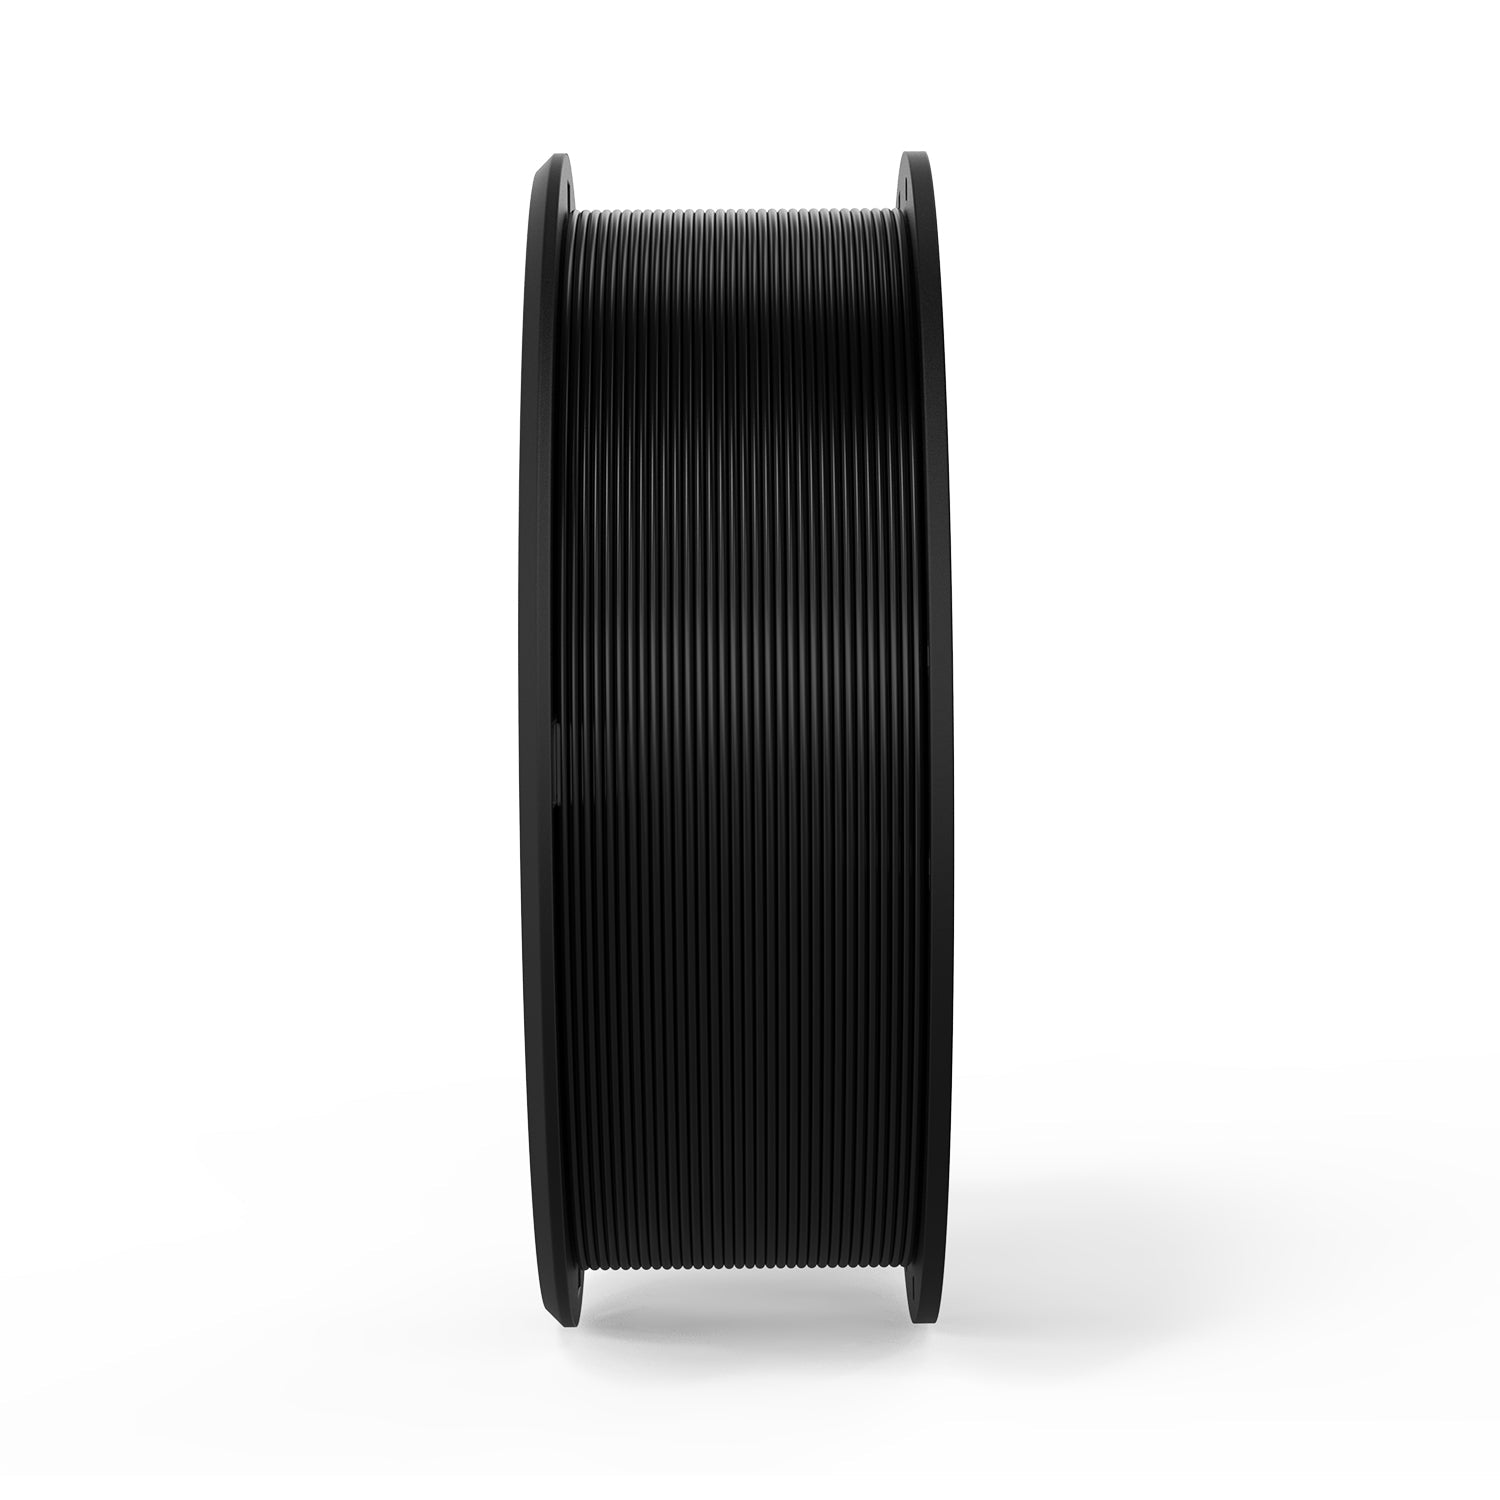 ERYONE fibra di carbonio PETG 3D filamento stampante 1,75 millimetri, precisione dimensionale +/- 0,05 mm 1 kg (2.2LBS)/piscina